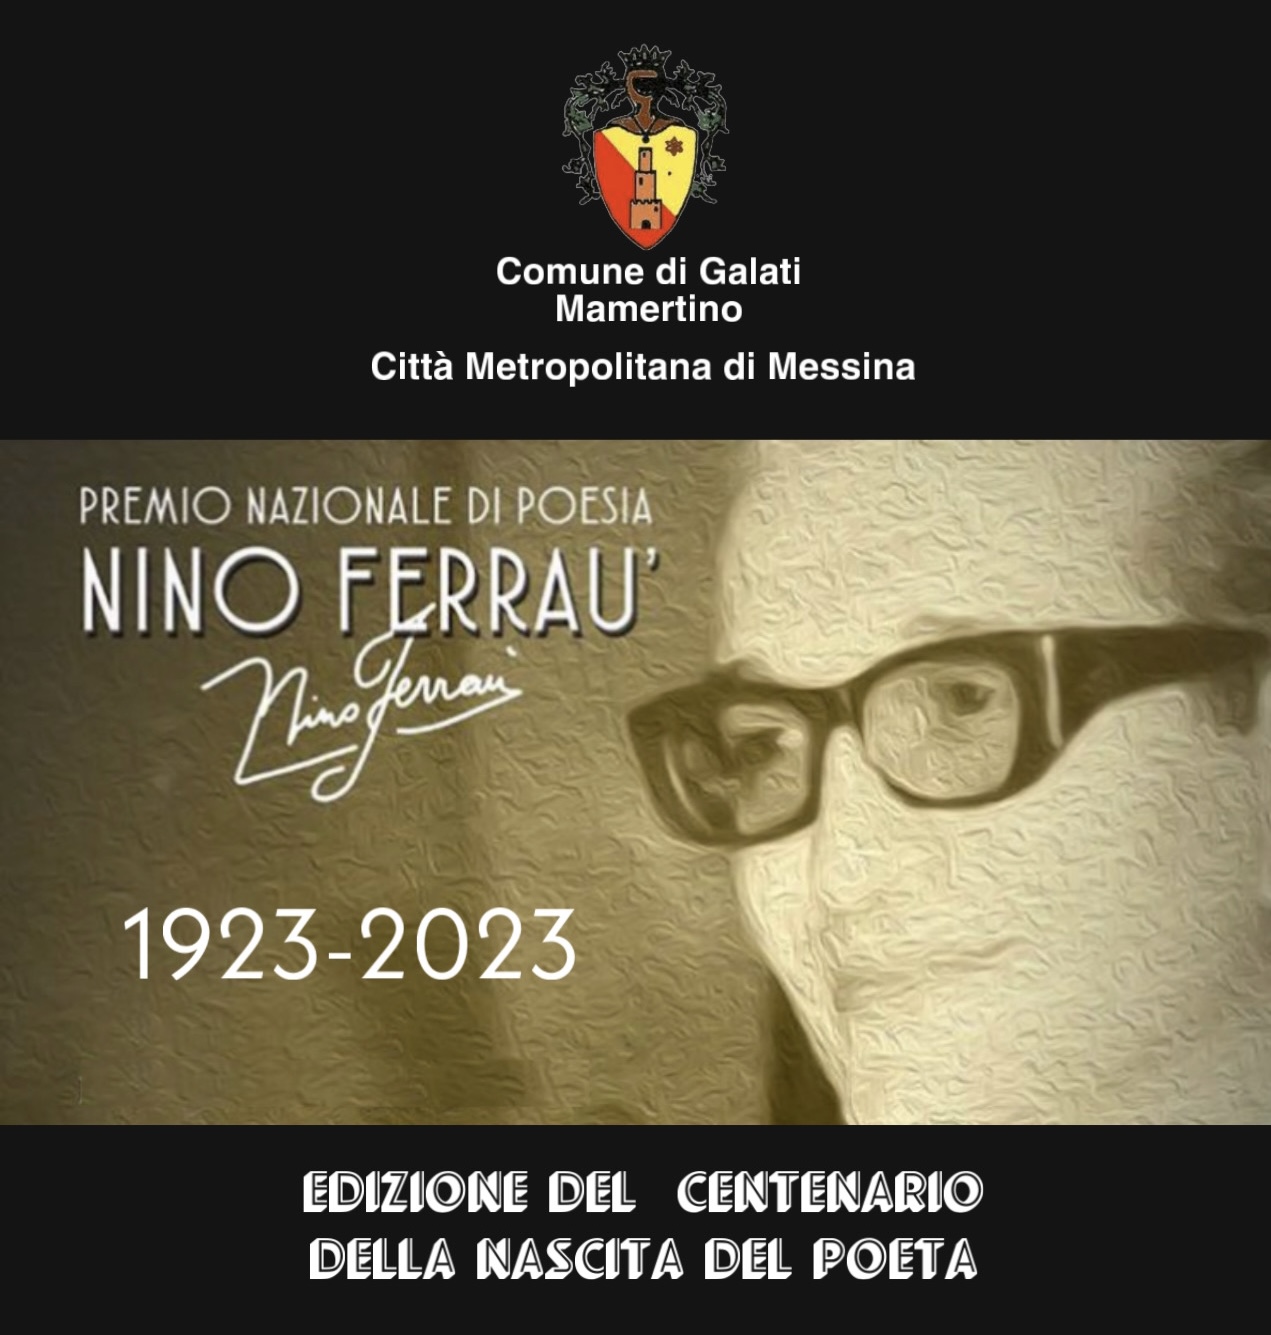 Galati Mamertino si prepara al Premio Nazionale di Poesia “Nino Ferraù” nel centenario dalla nascita